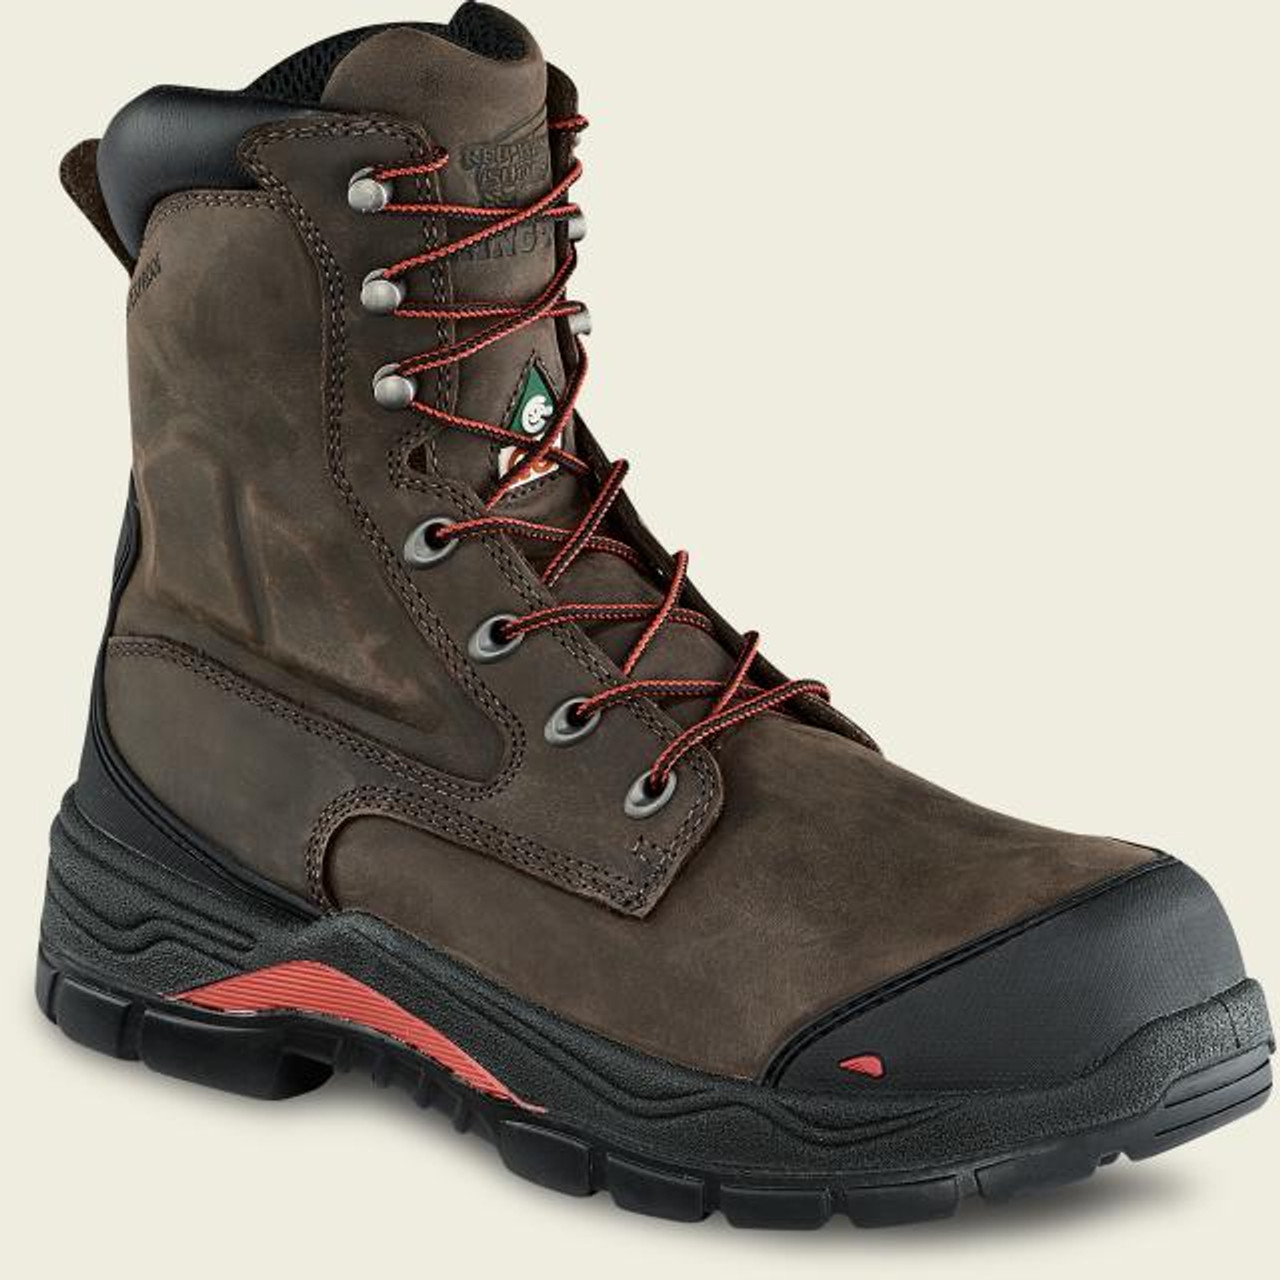 men's insulated waterproof work boots